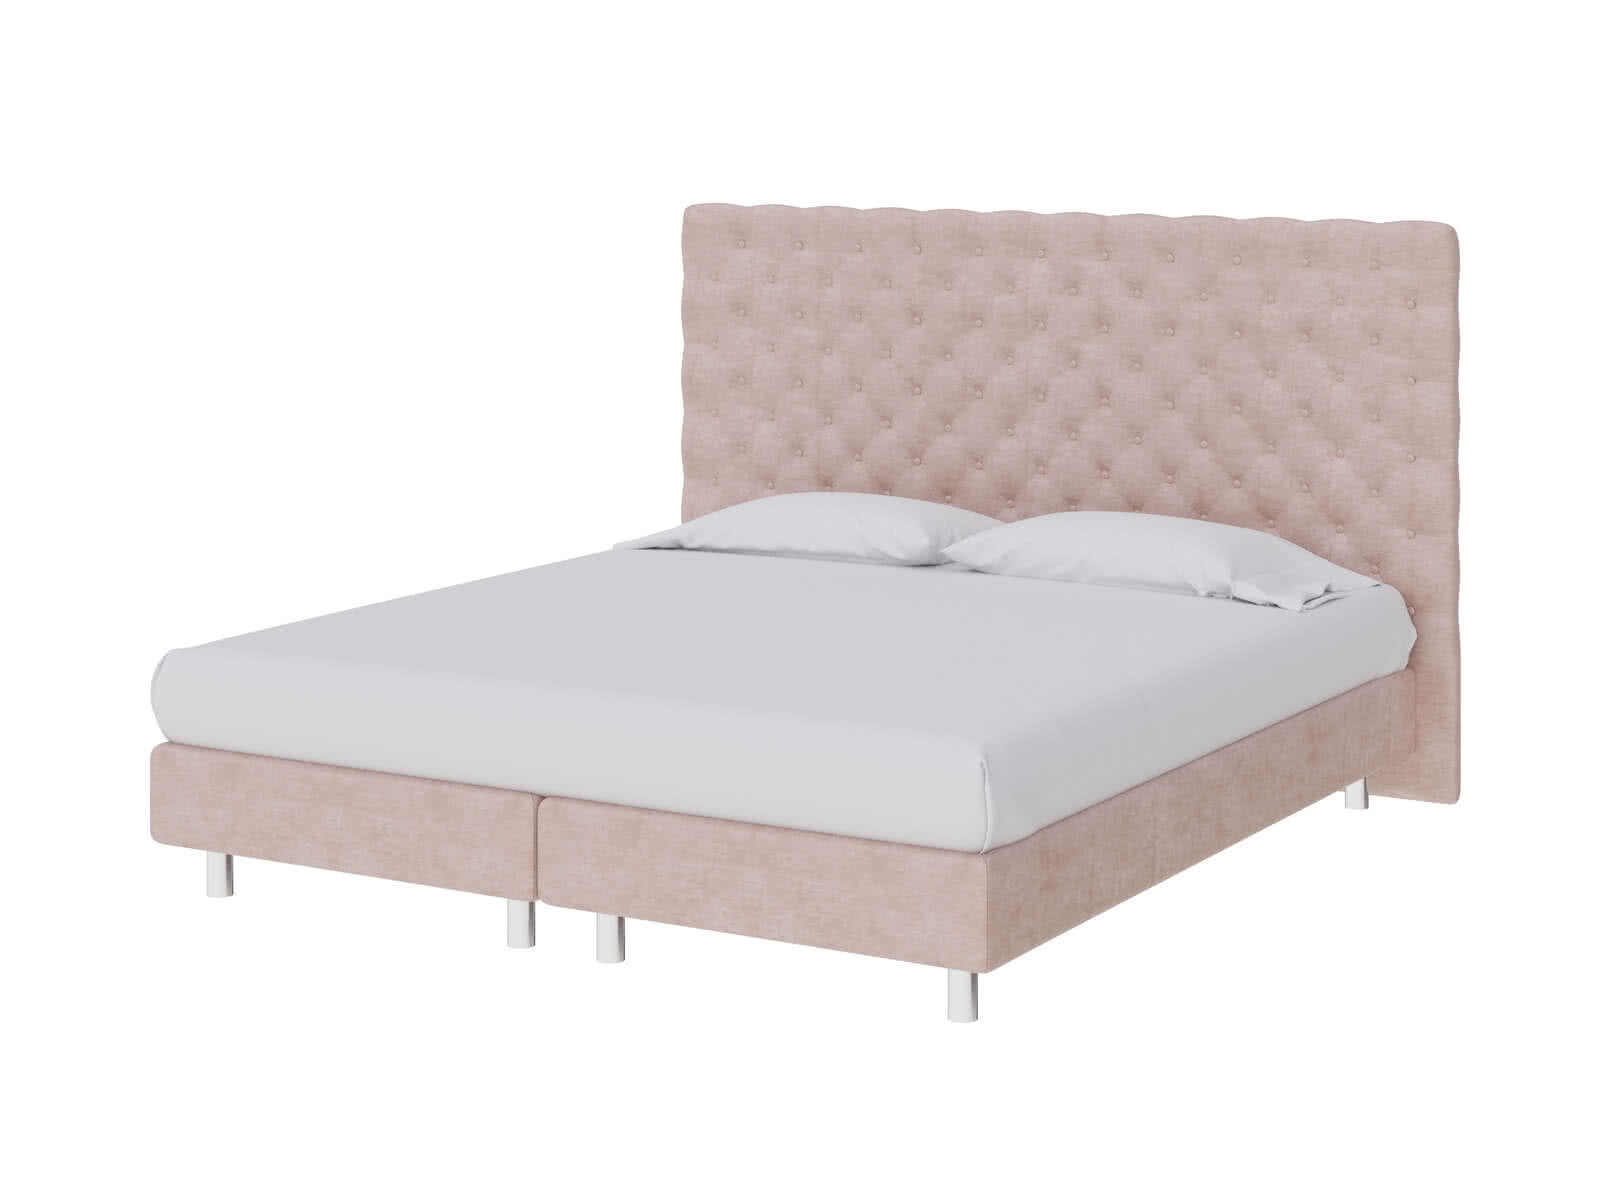 Кровать ProSon Europe Paris Elite 180 х 200 см Лофти Тауп от производителя — цены фабрики, доставка